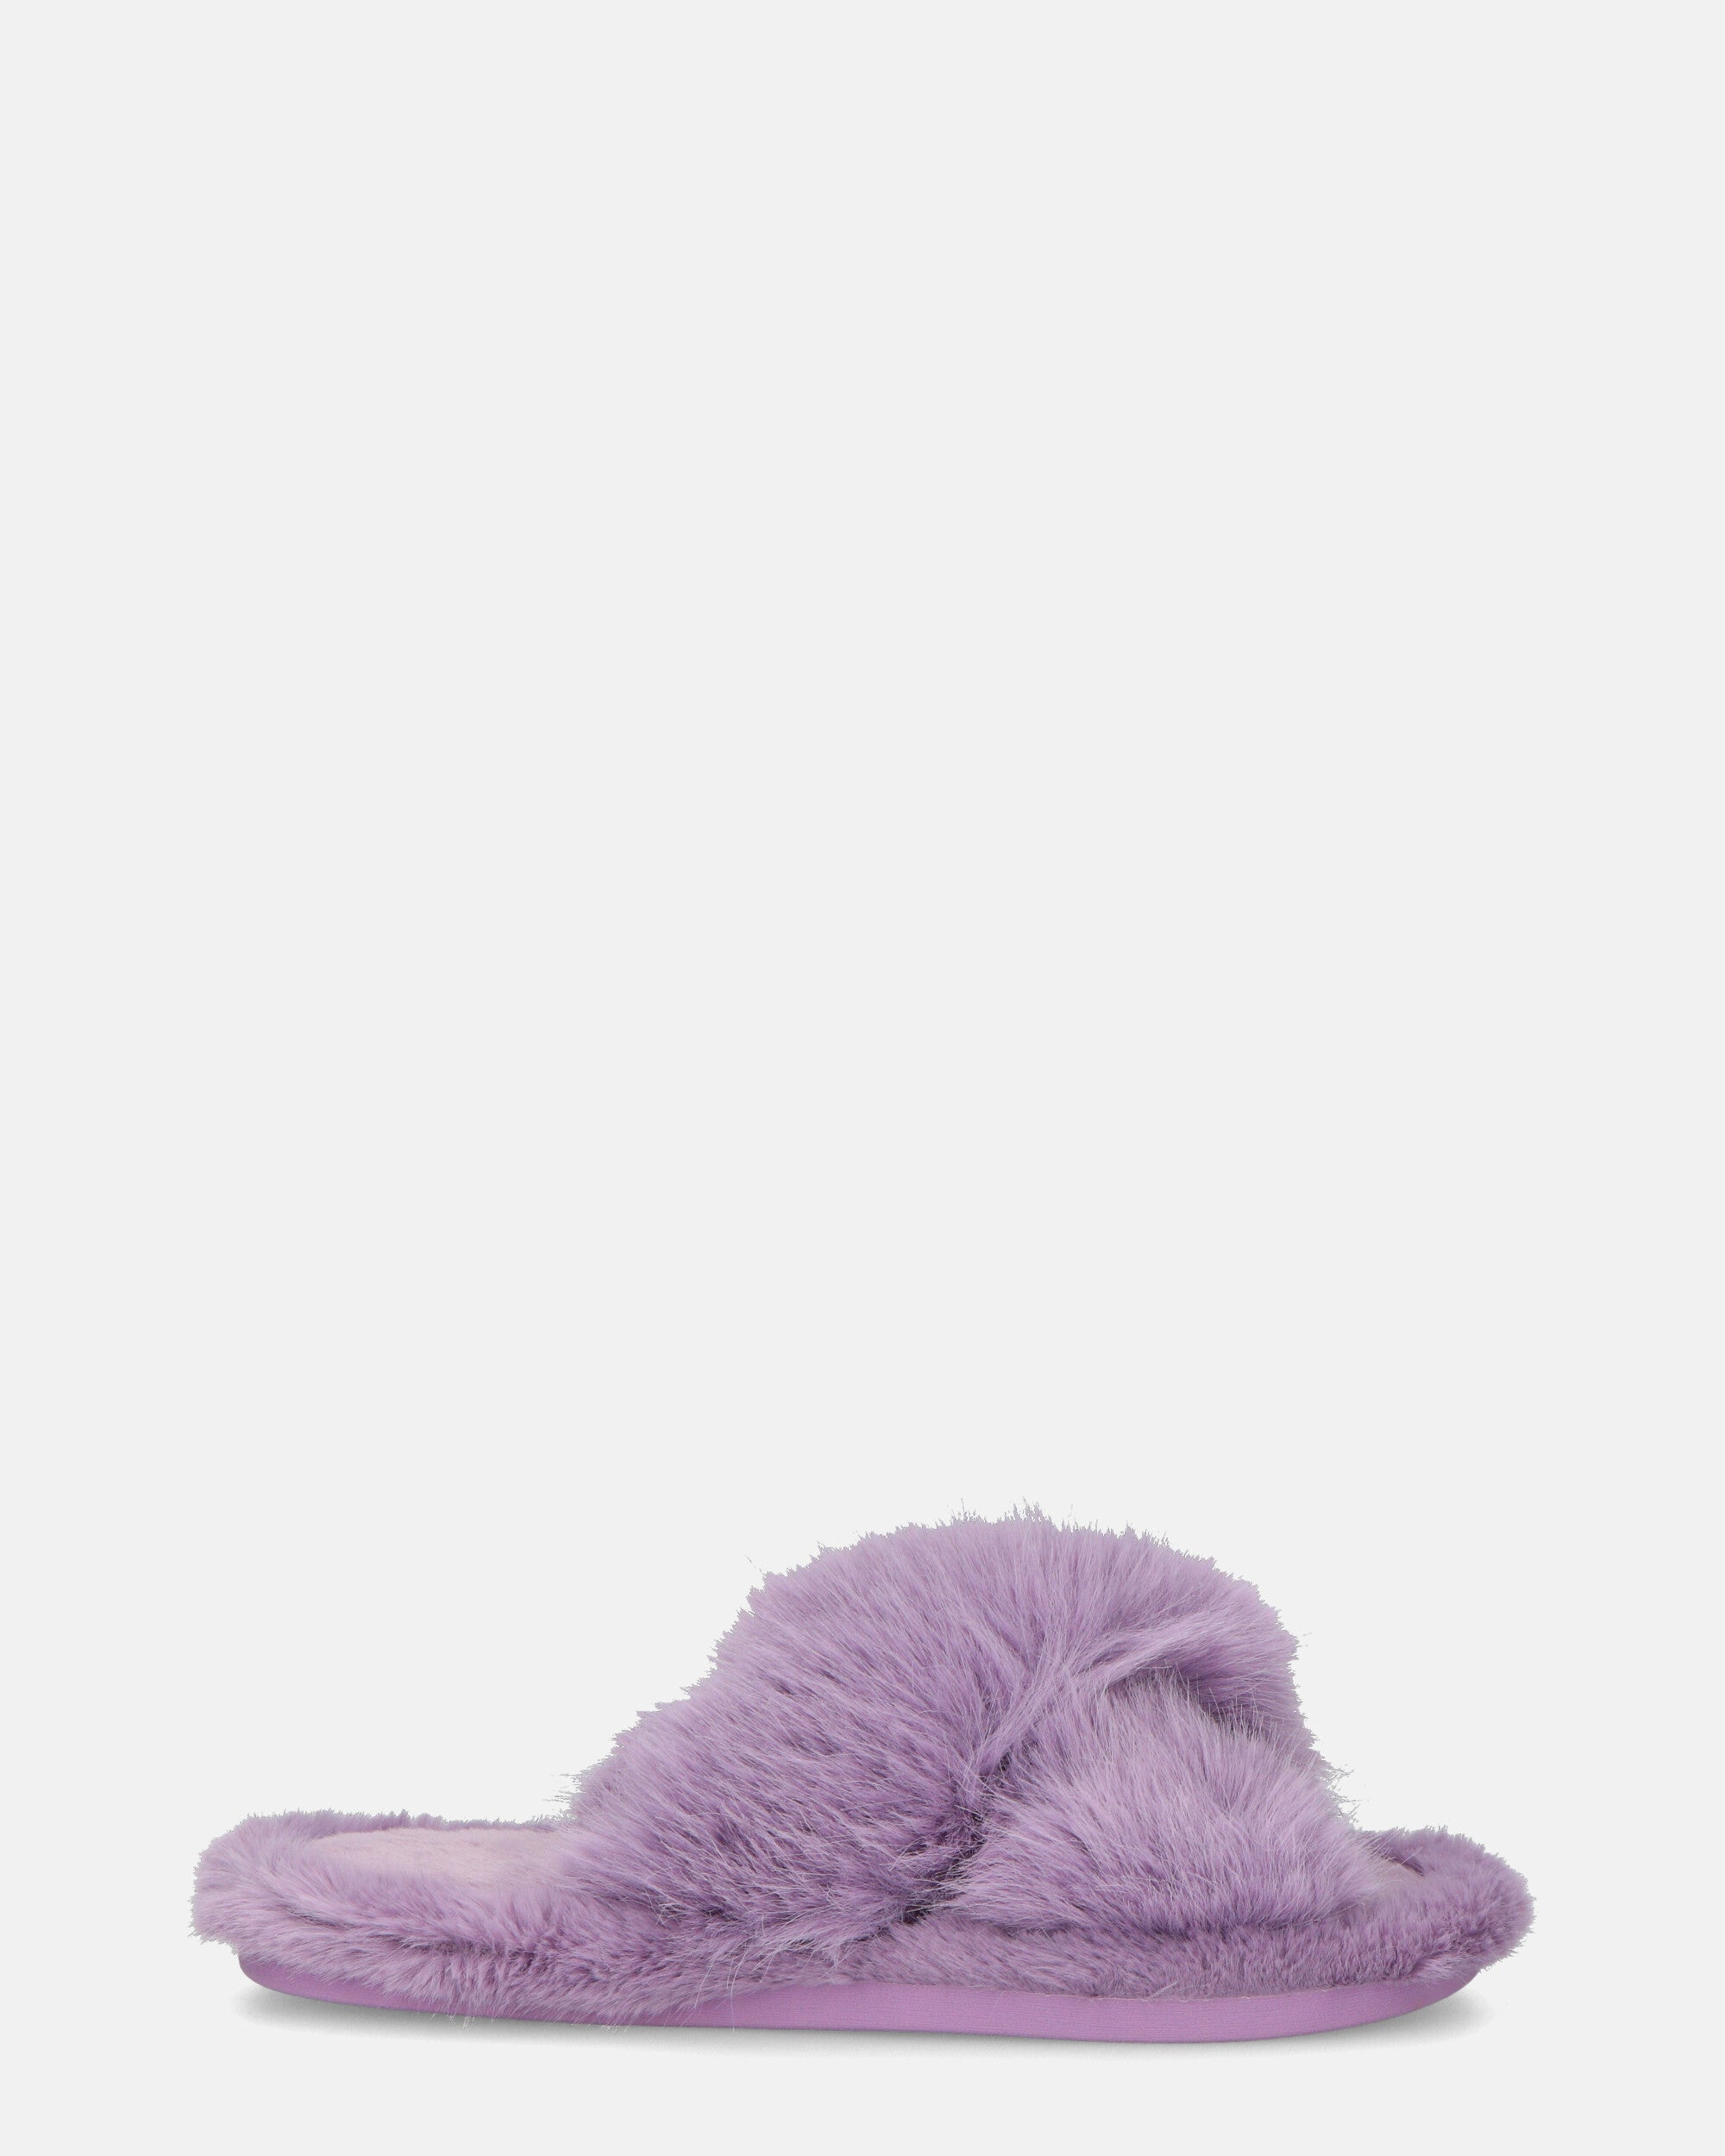 SUZUE - ciabattine aperte in punta in pelliccia violetta